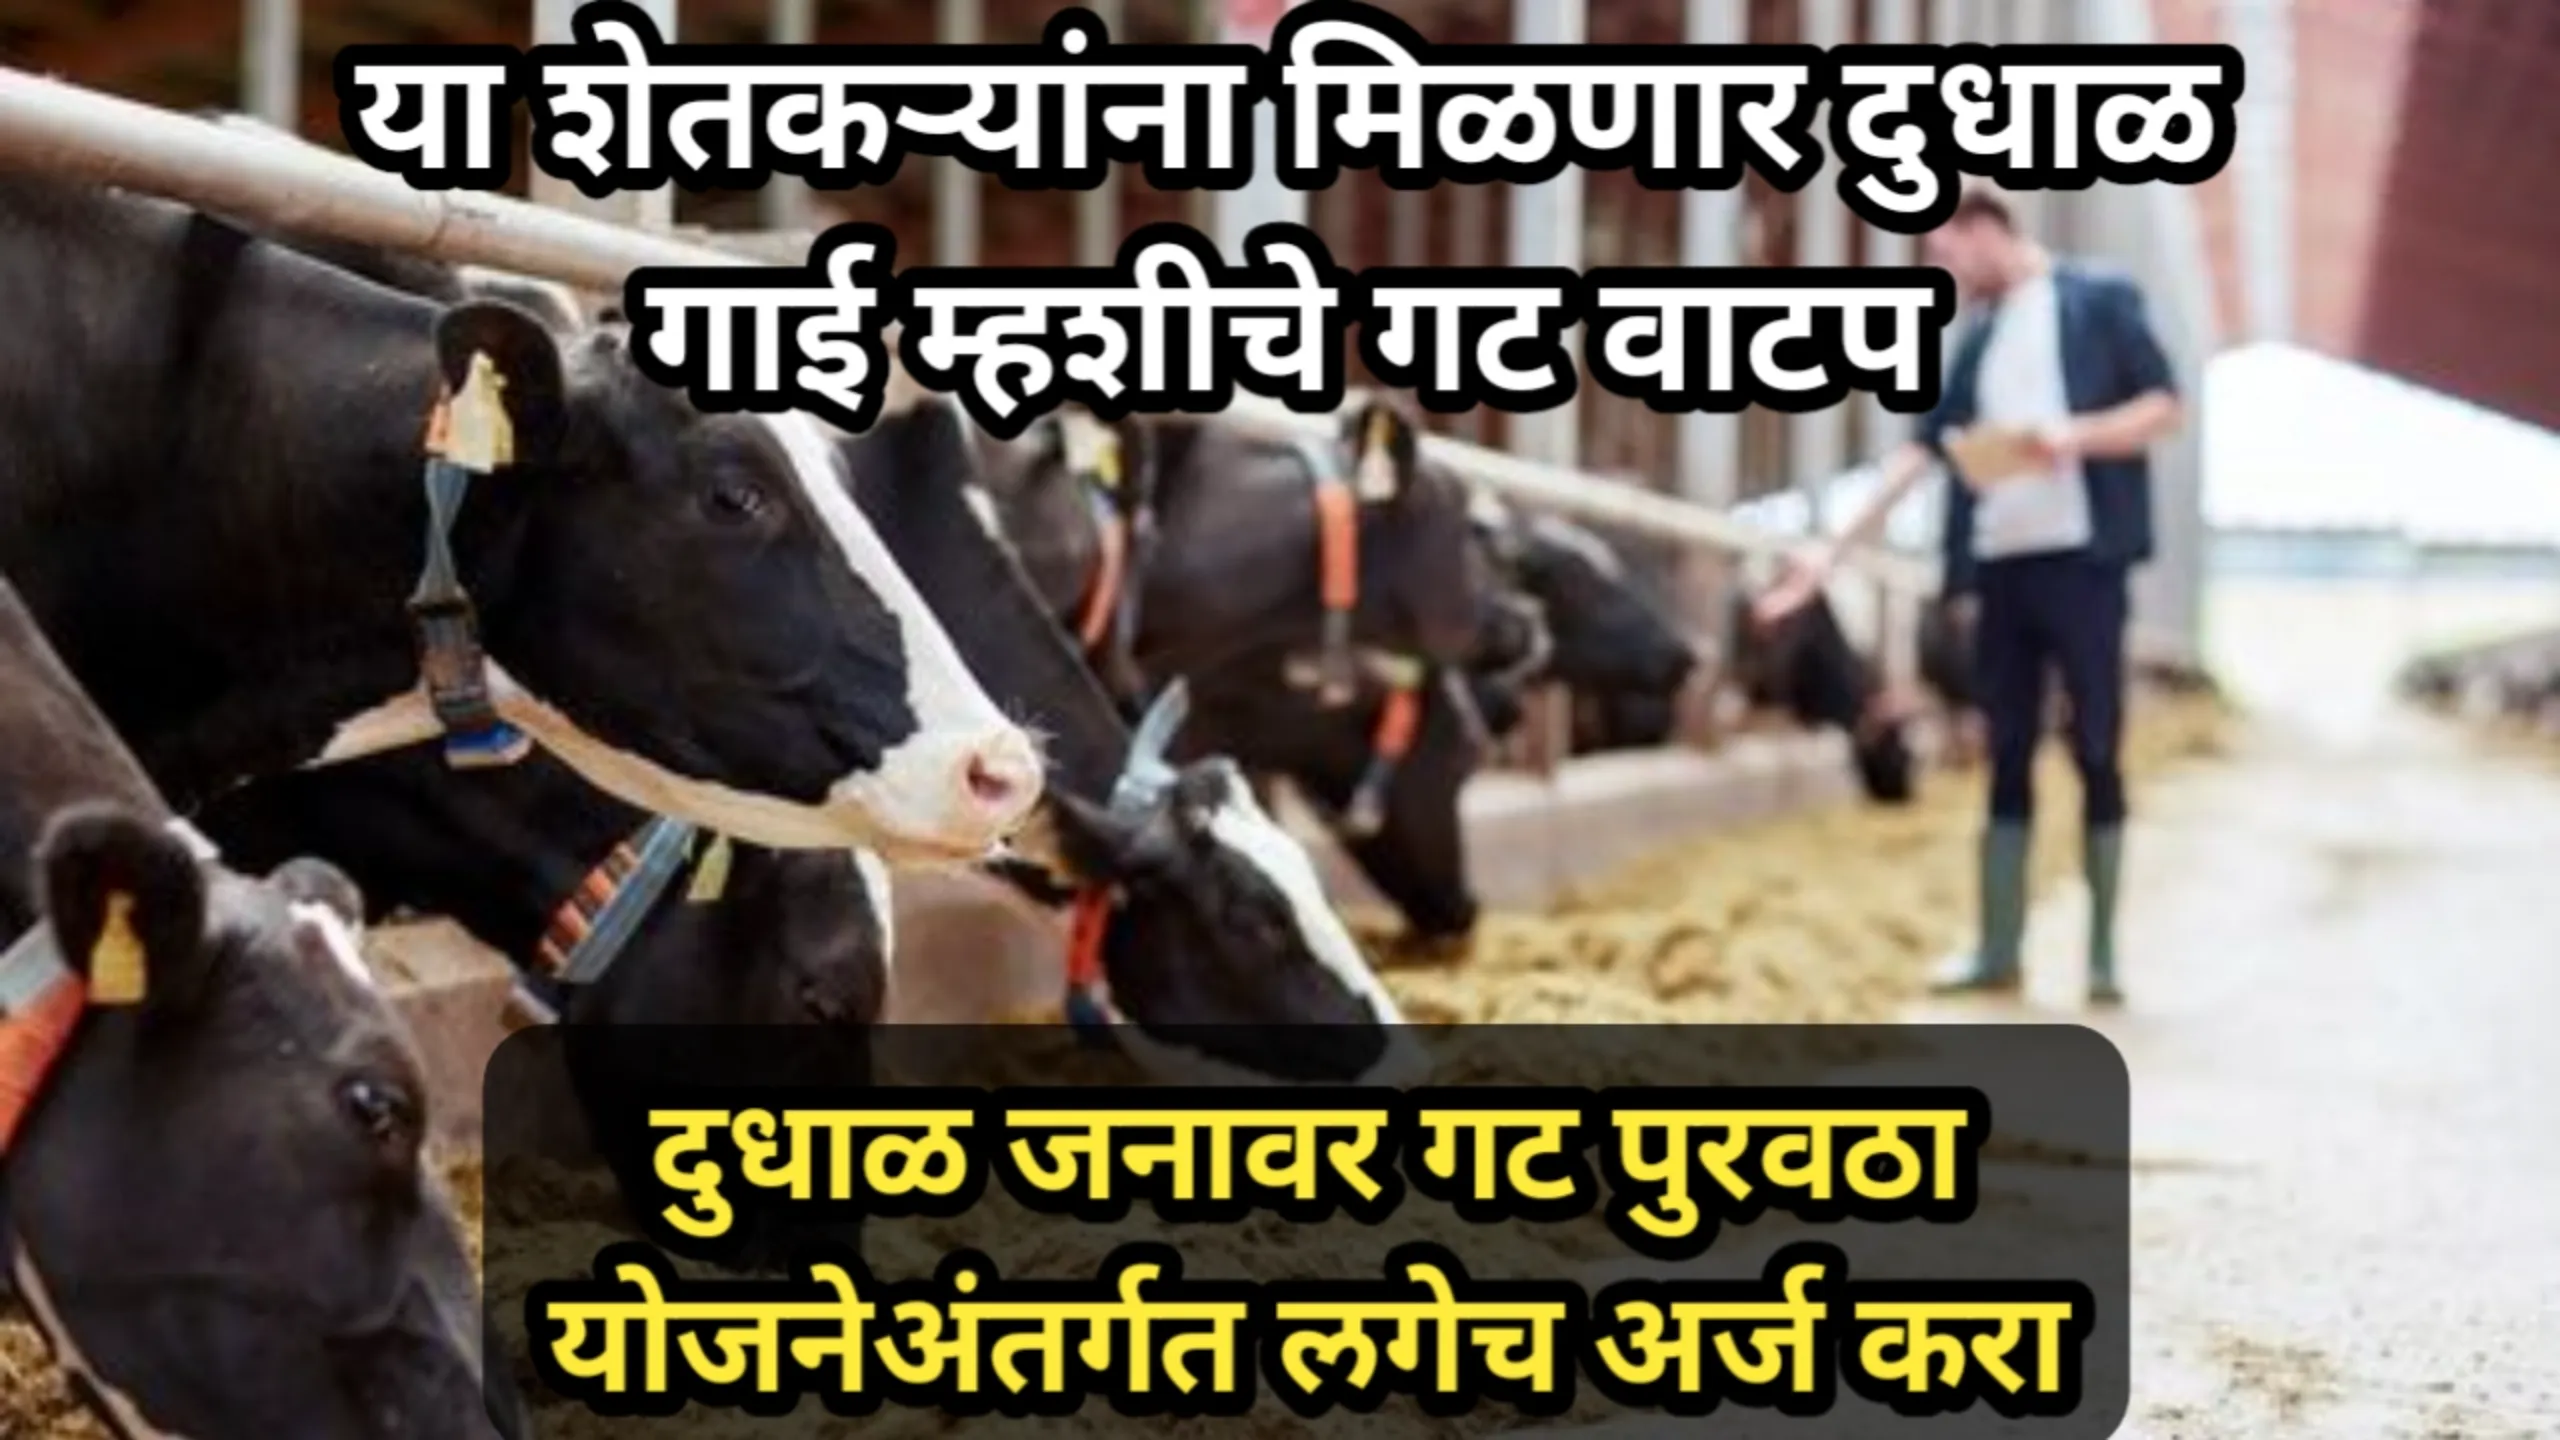 या शेतकऱ्यांना मिळणार दुधाळ गाई म्हशीचे गट वाटप, दुधाळ जनावर गट पुरवठा योजनेअंतर्गत लगेच अर्ज करा | Dudhal Janavar Gat Puravtha Yojana